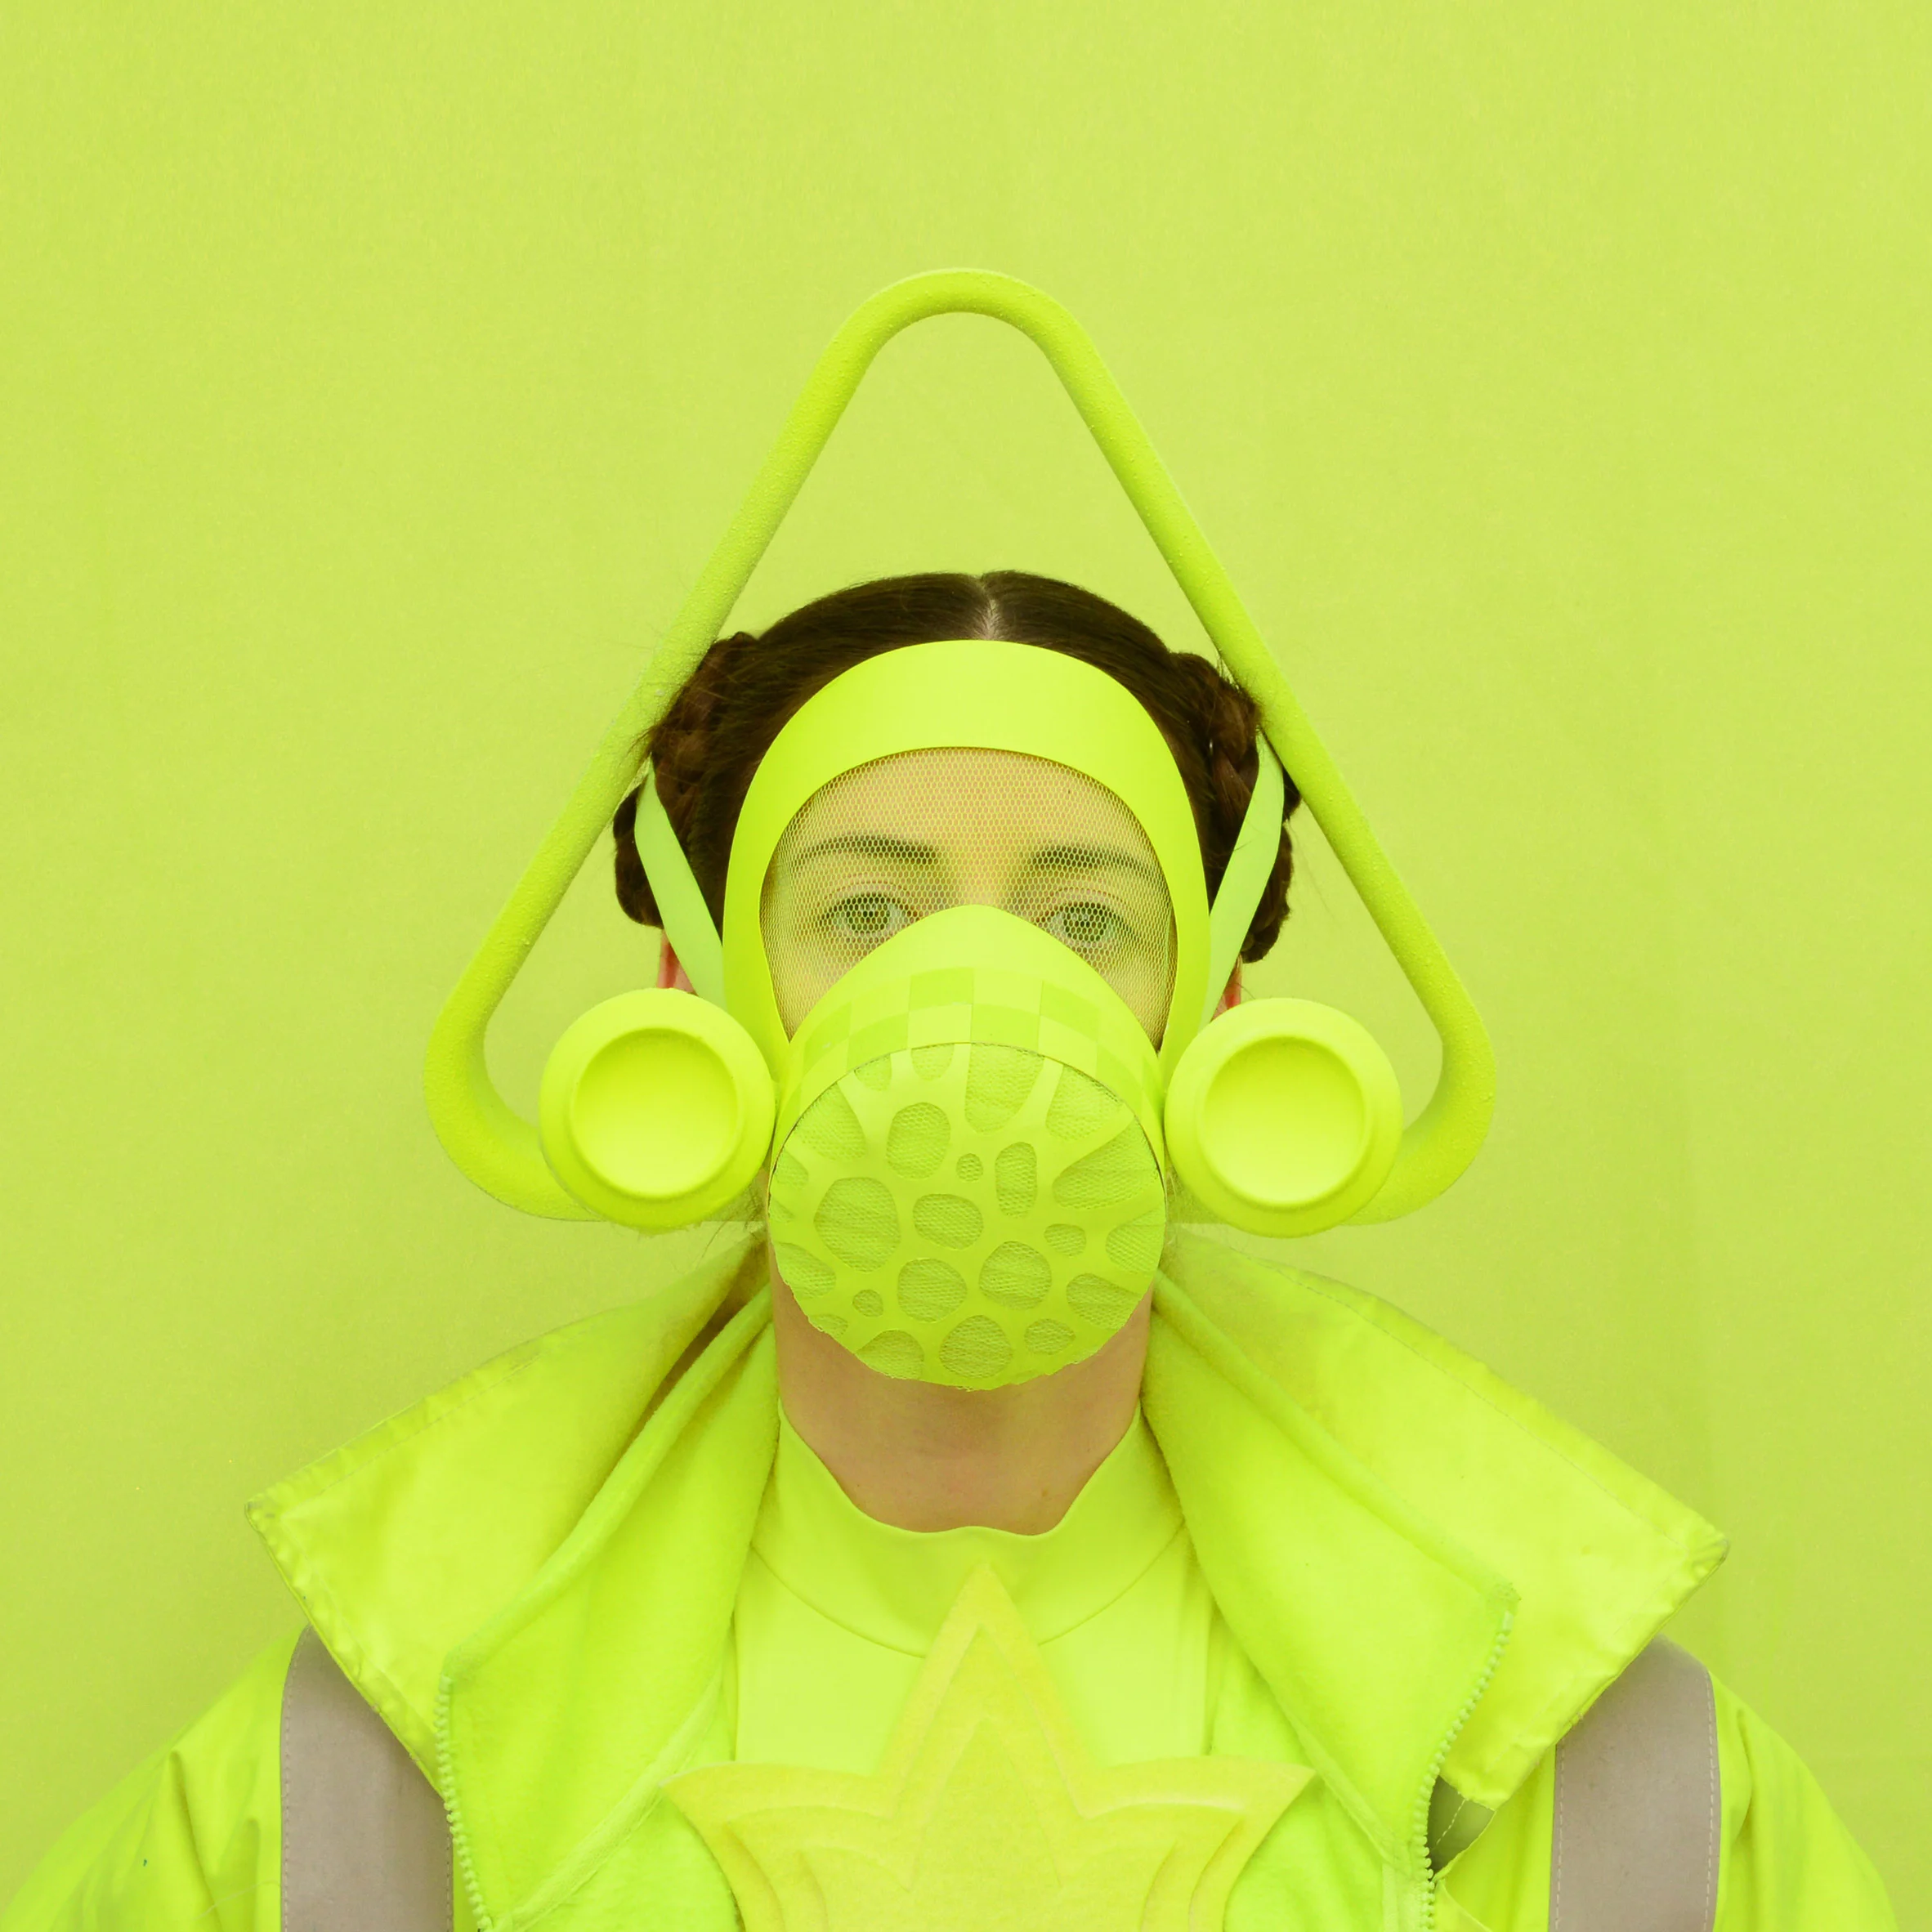 Дизайнер создает невероятные маски из кабелей и банок из-под йогурта, и они просто чудо - фото 479978